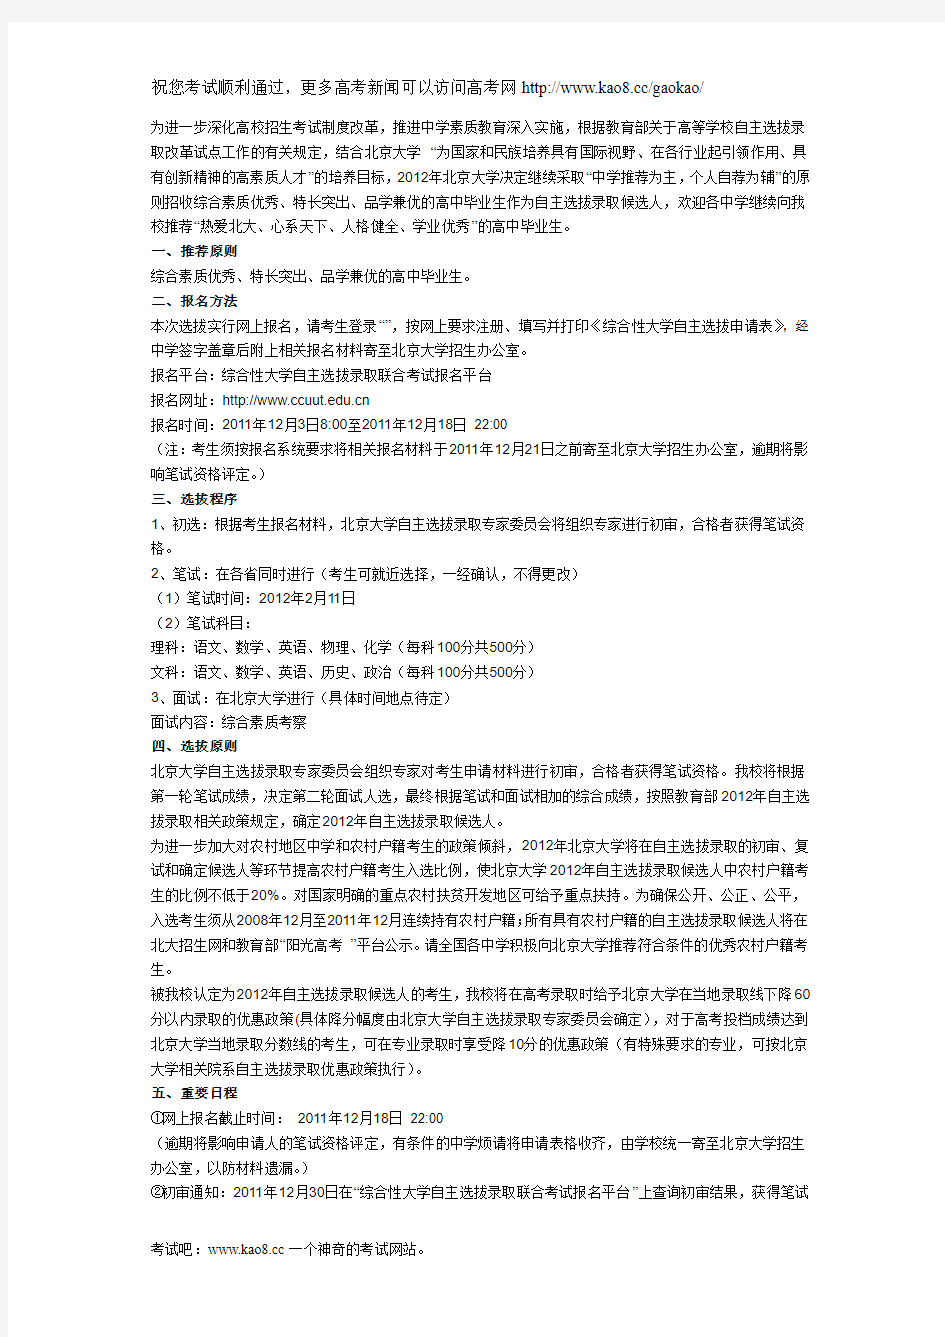 北京大学2012年自主选拔录取招生简章